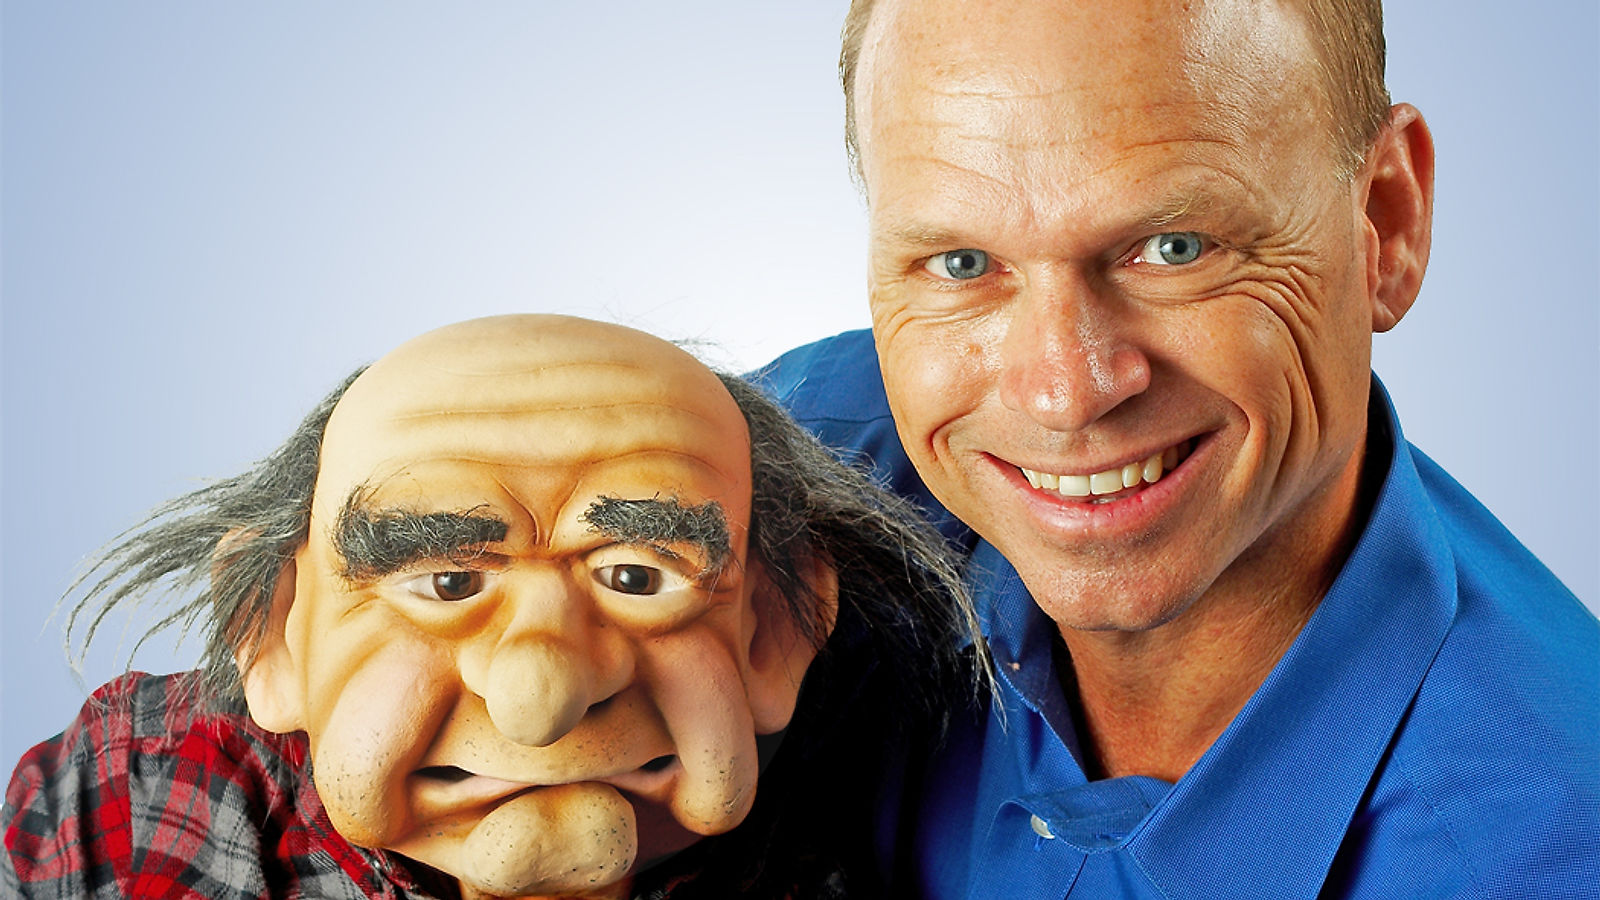 Ventriloquist Greg Claassen